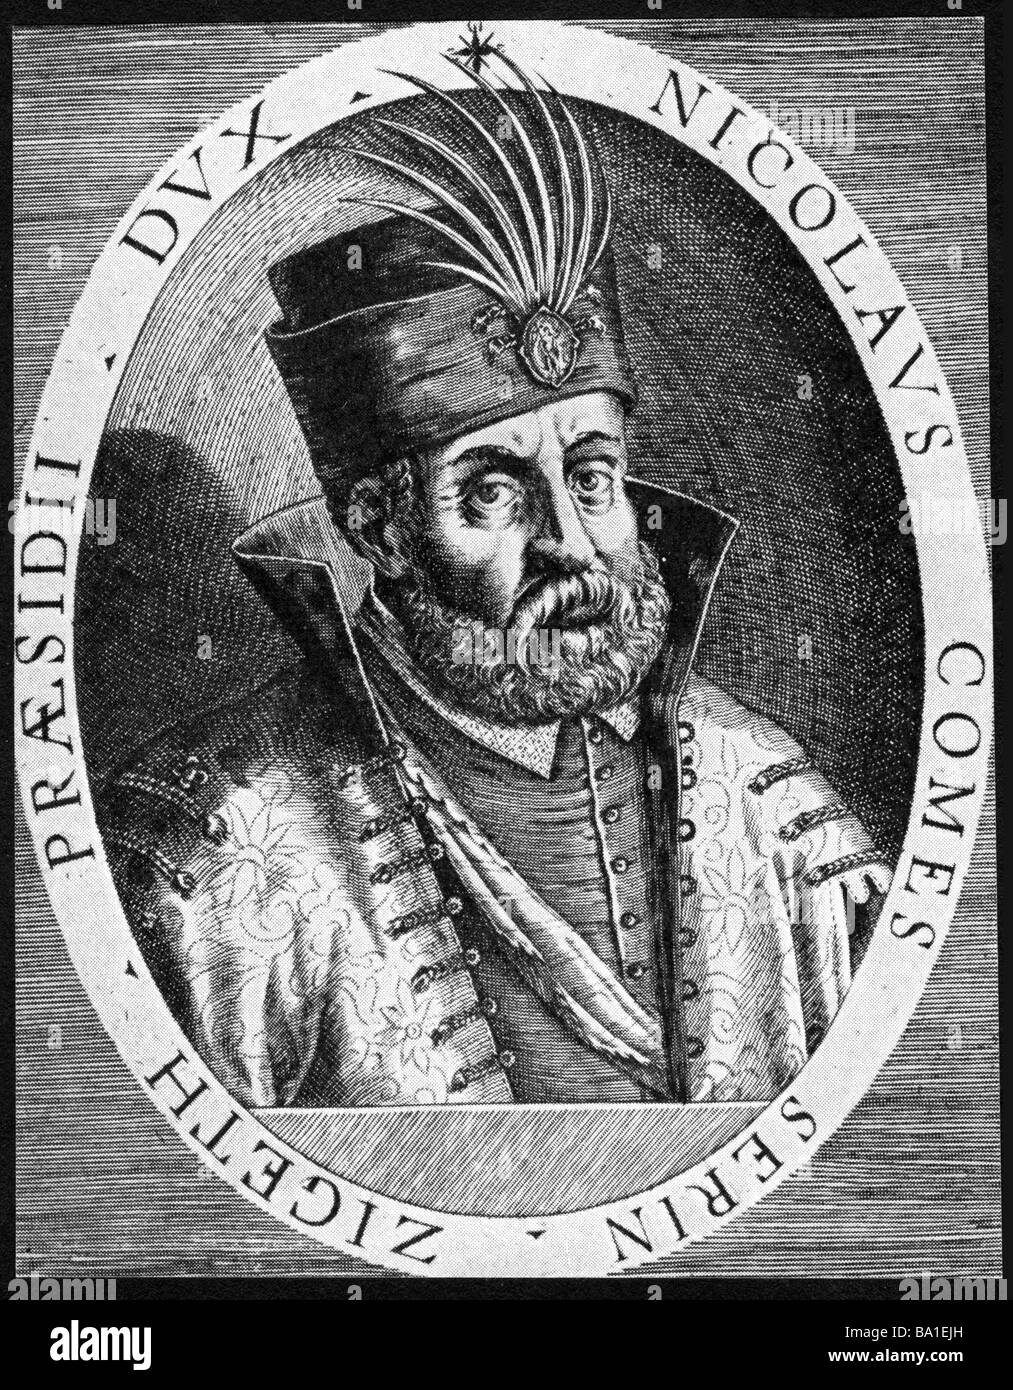 Zrinski, Nikola, 1508 - 8.9.1566, ungarische General im Dienste der Habsburgermonarchie, Ban von Kroatien 1542-1556, Radierung von Matt Stockfoto